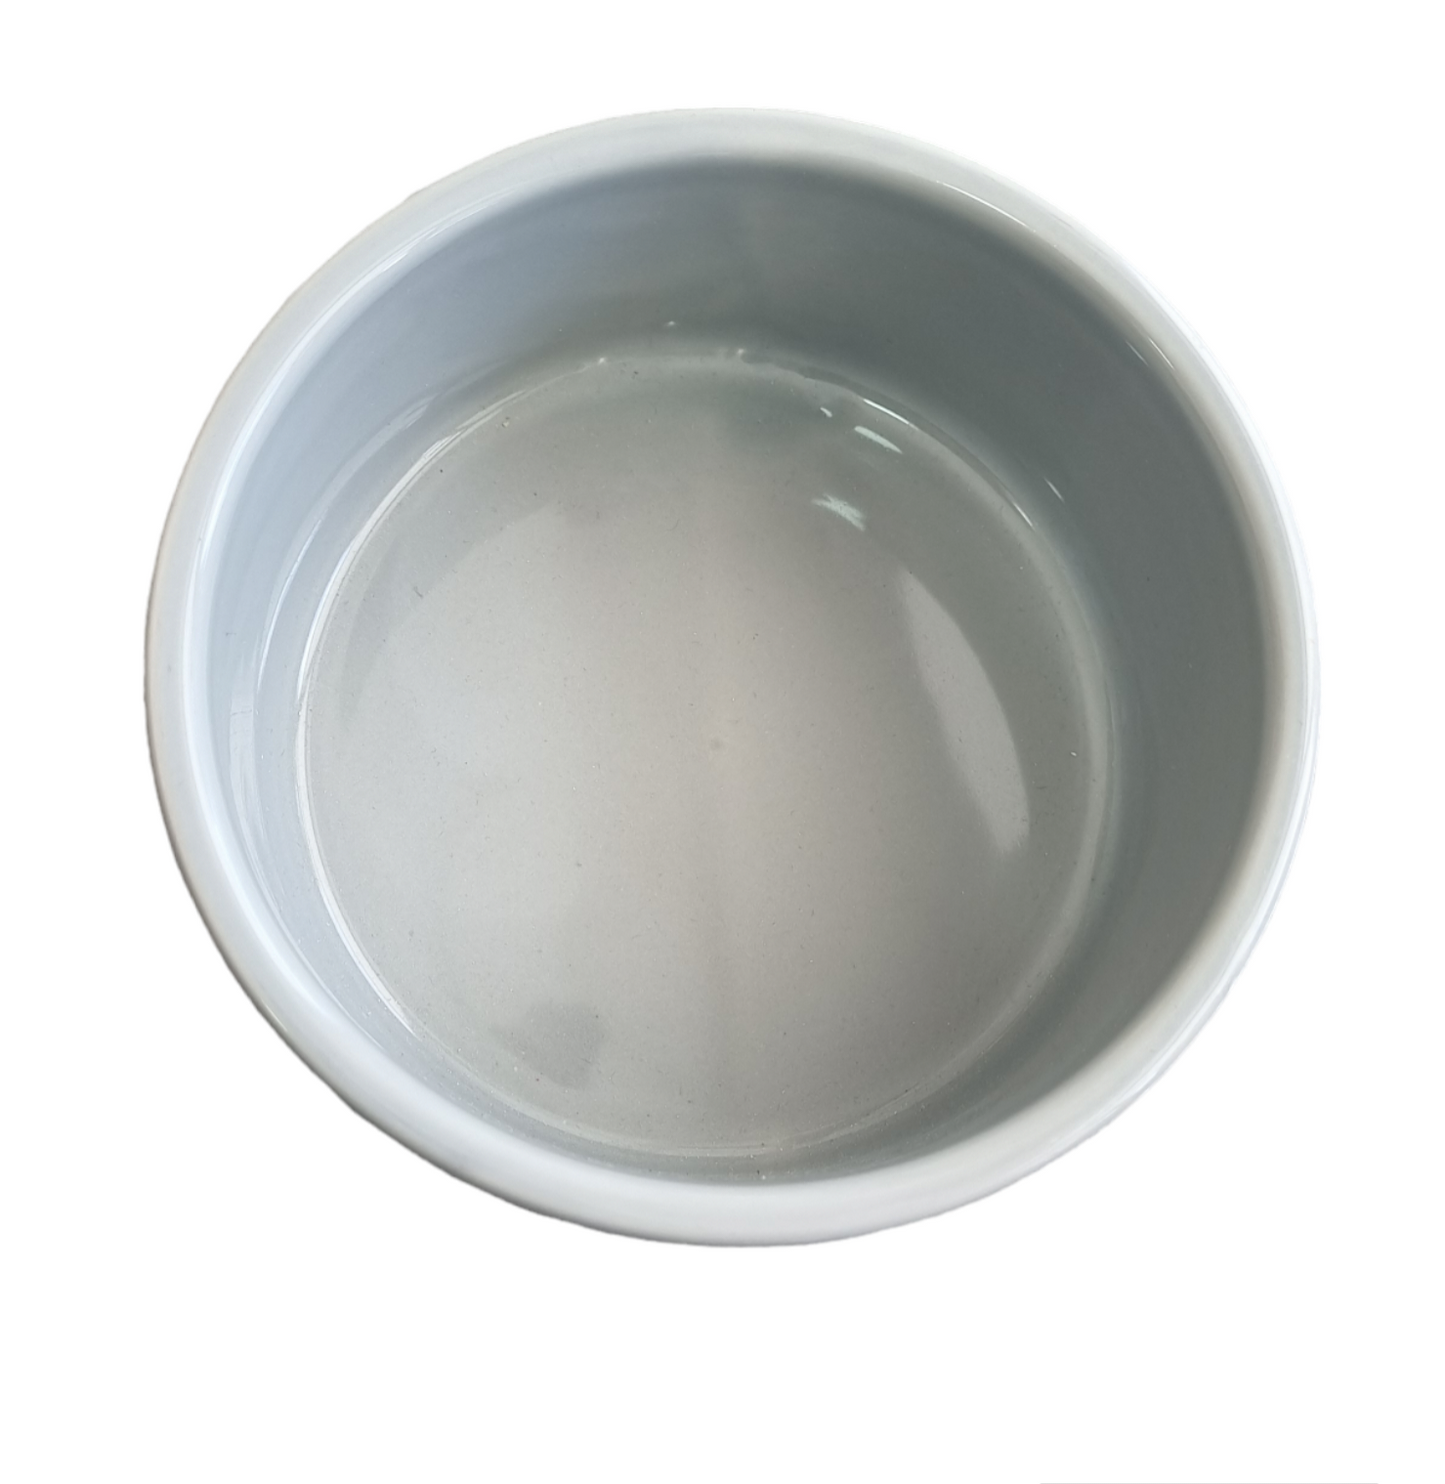 Ceramic dog& cat bowl ( Medium)